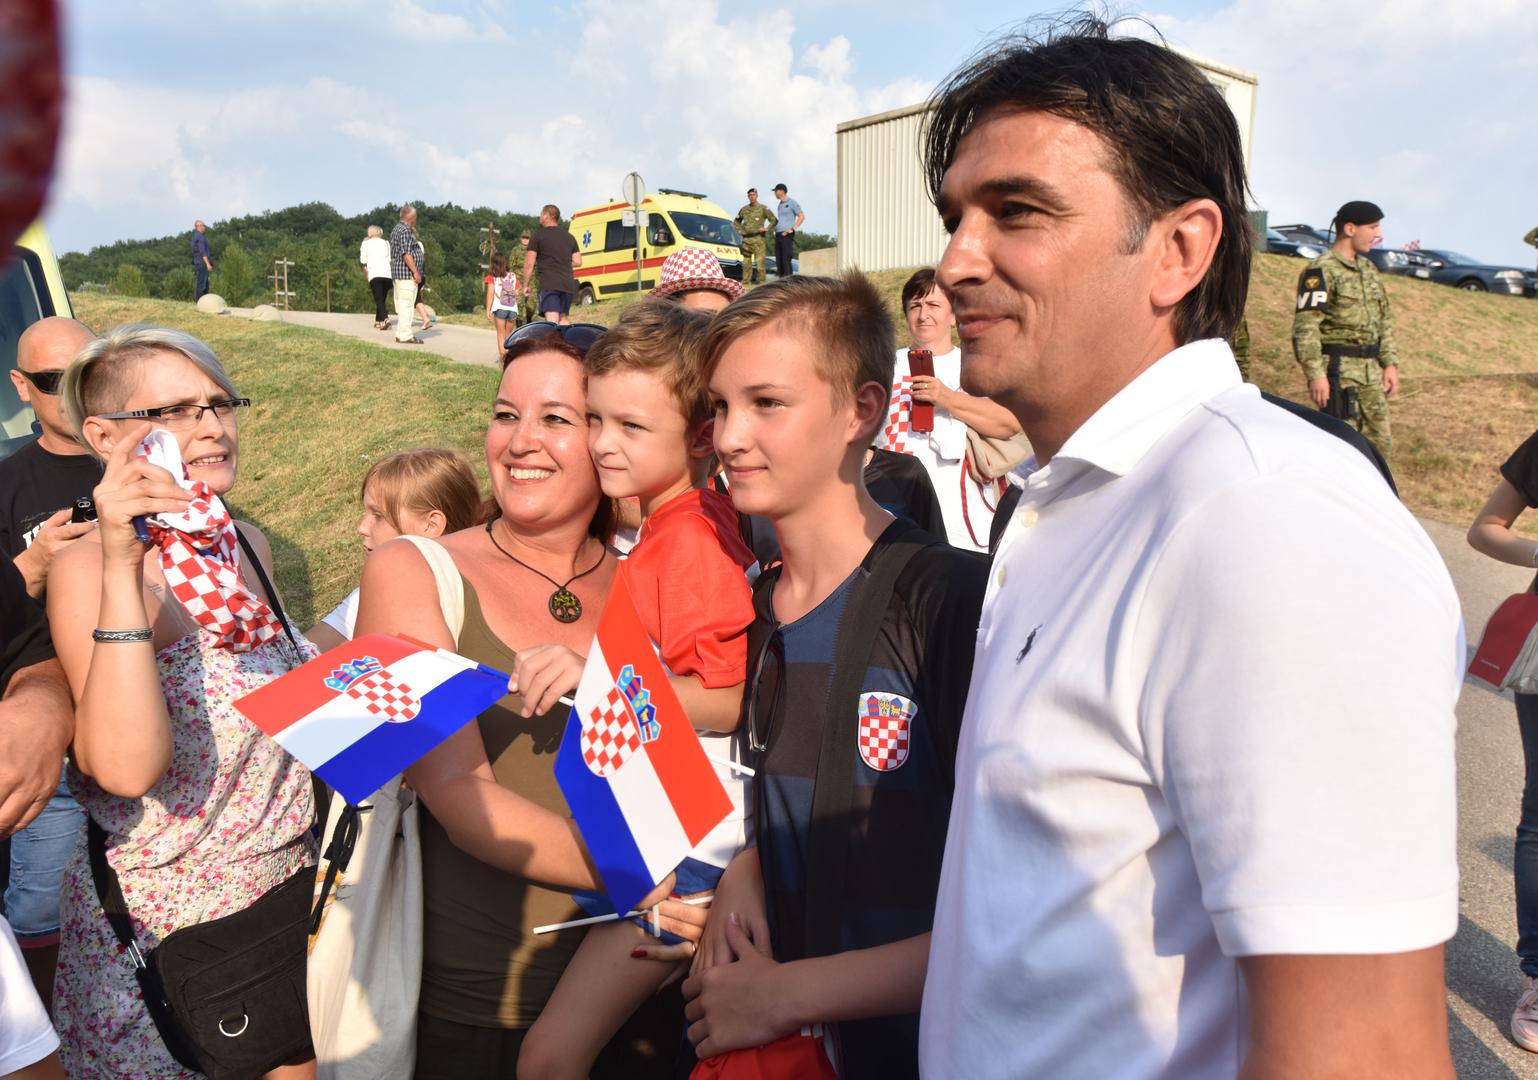 Izbornik Hrvatske nogometne reprezentacije Zlatko Dalić stigao je u Knin.

